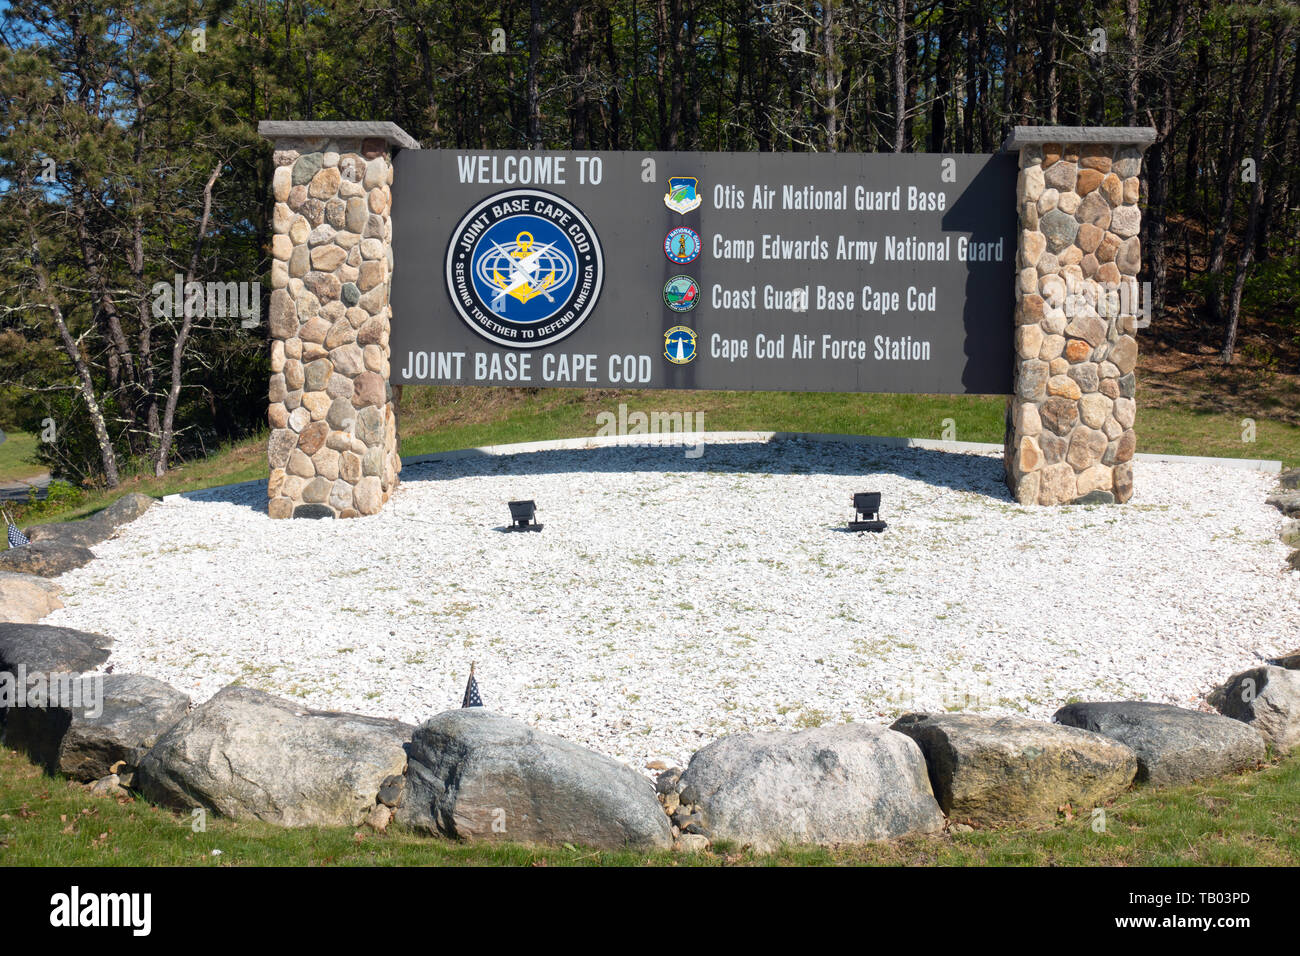 Benvenuti alla base Comune di Cape Cod con segno Otis Air National Guard Base, Camp Edwards Esercito Nazionale Guardia, Coast Guard & Cape Cod Air Force Station Foto Stock